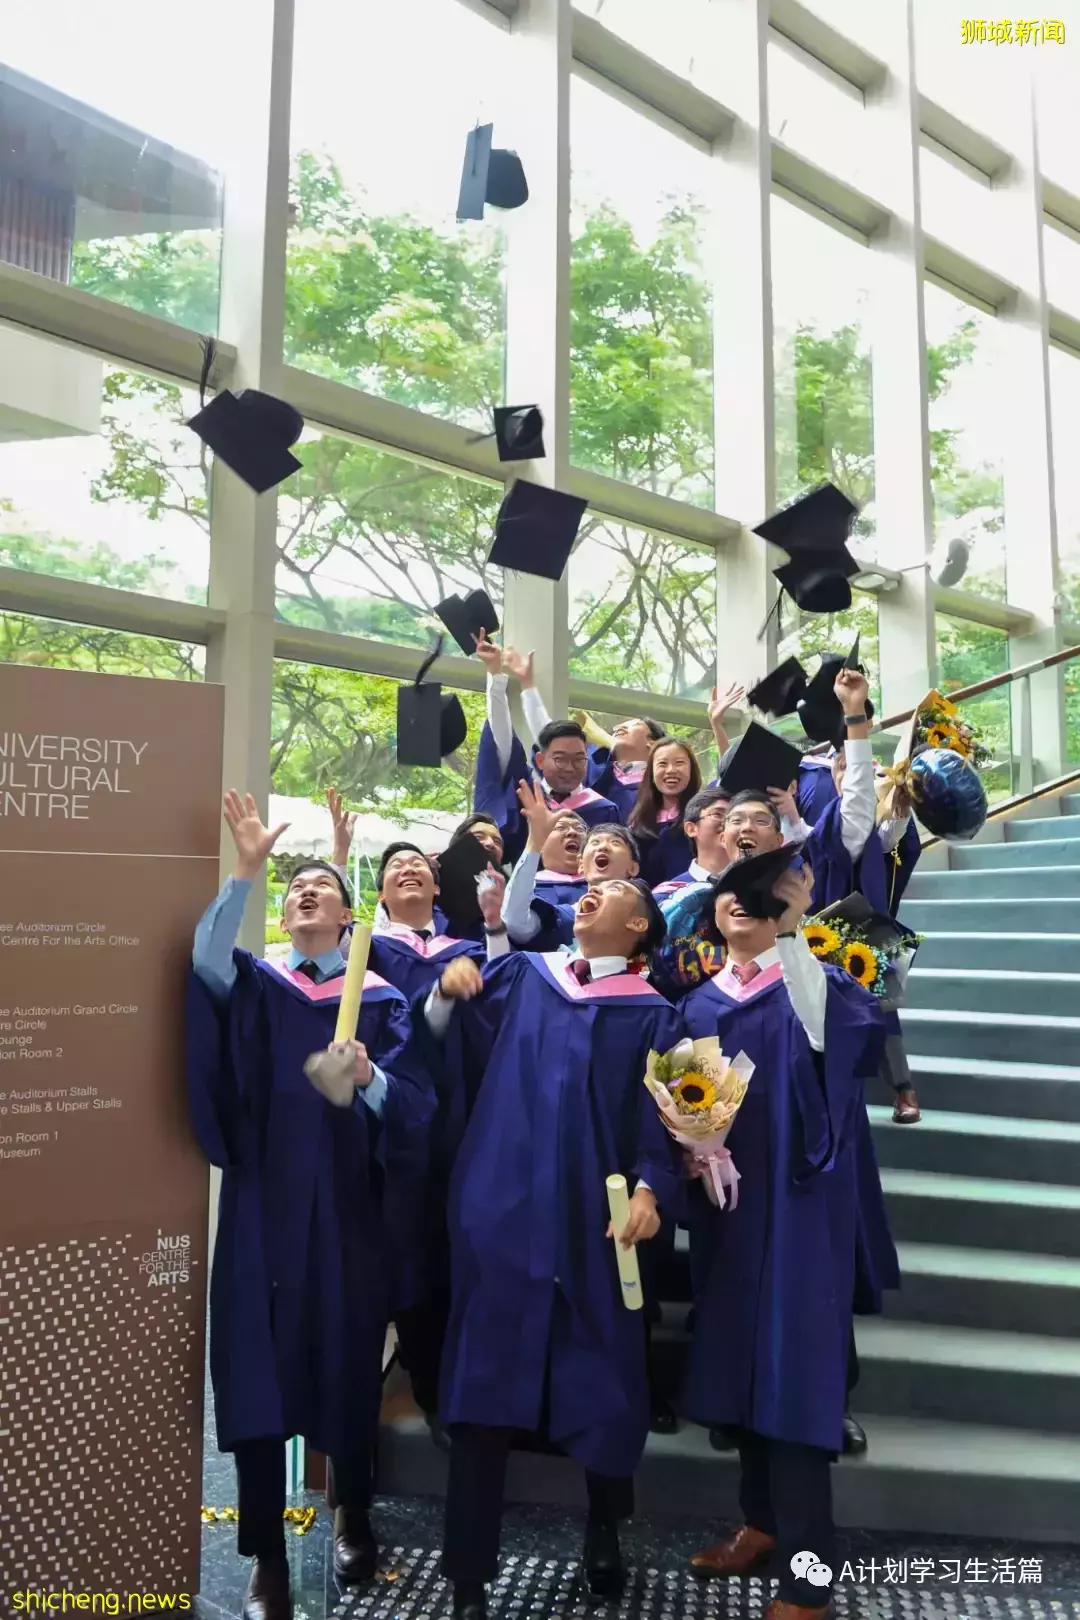 新加坡國立大學舉行首場畢業典禮